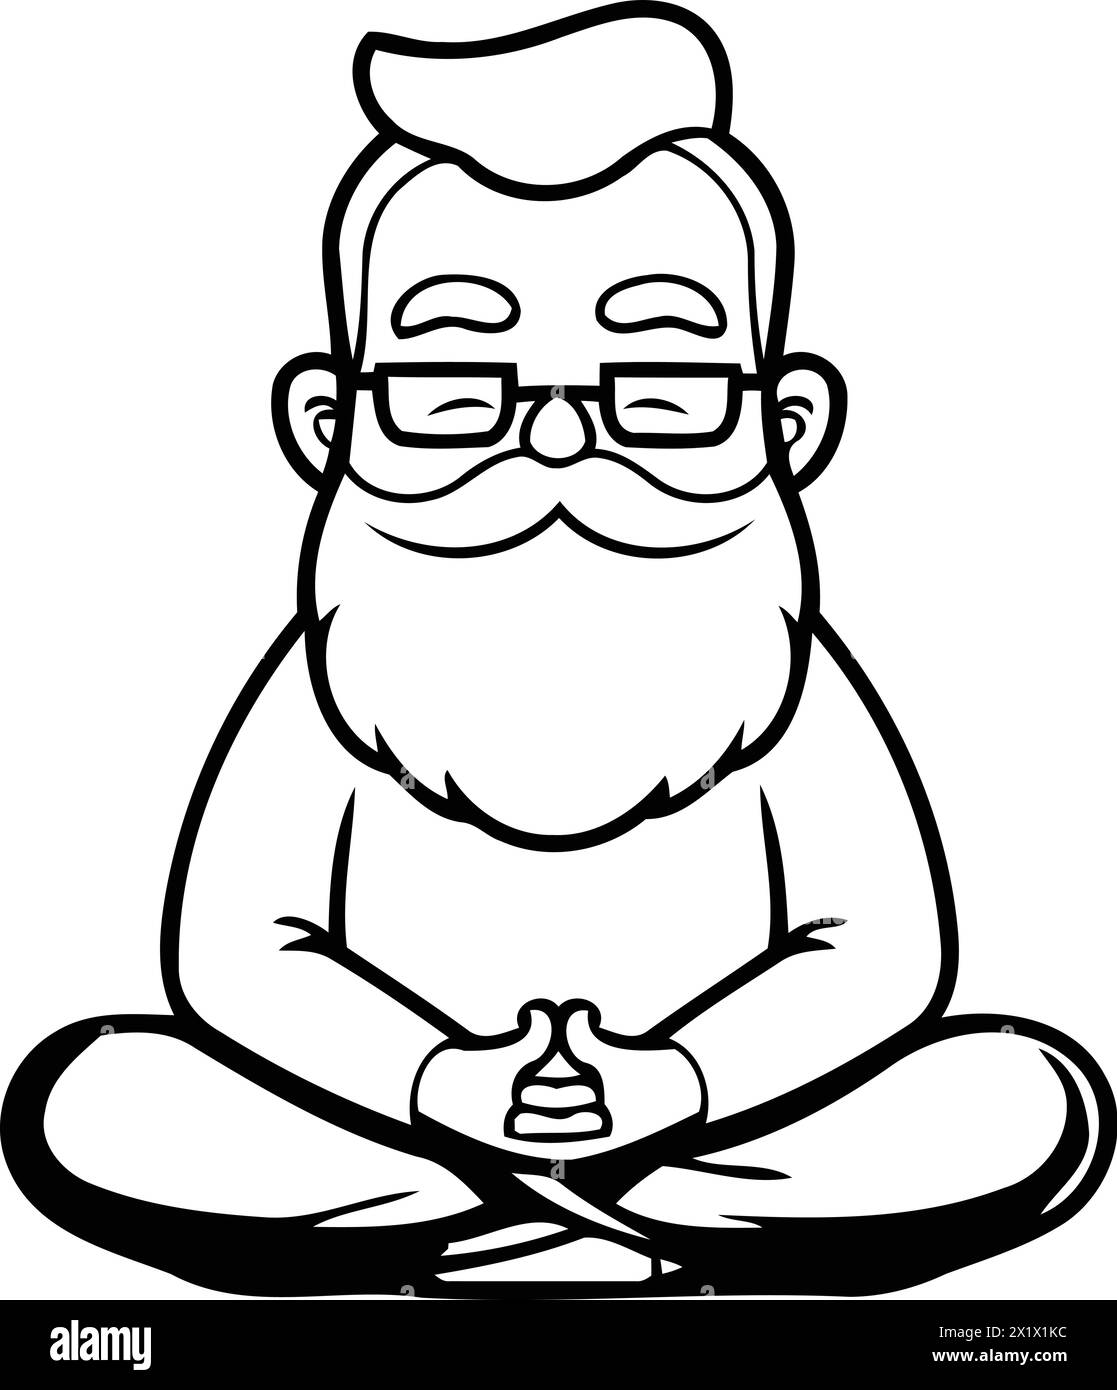 Vector illustration of cartoon old man meditating in lotus position. Stock Vector